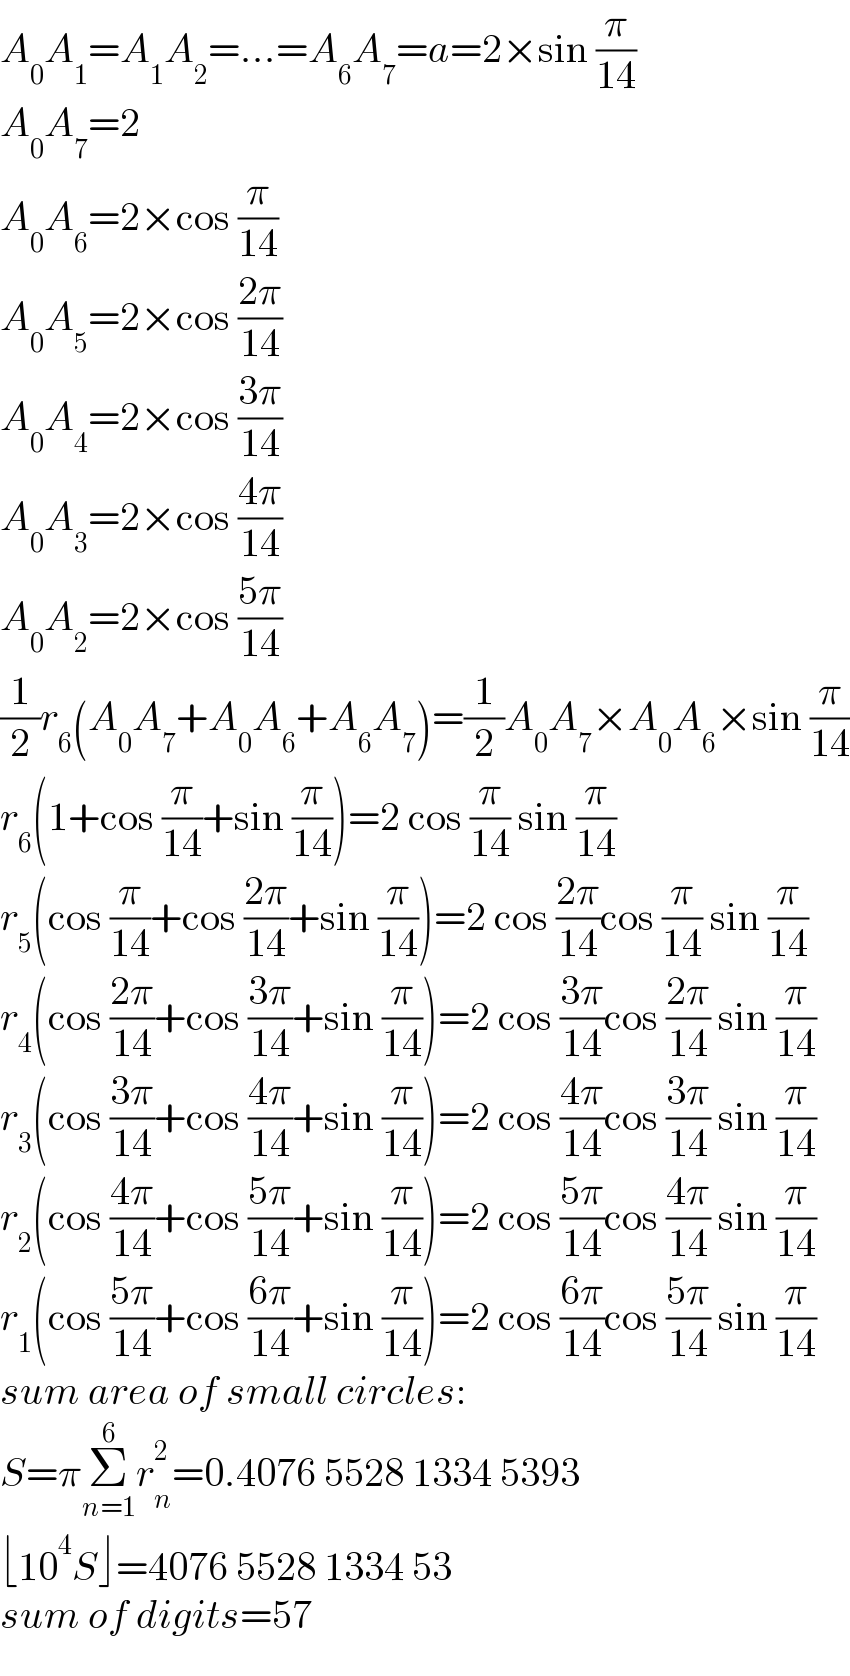 A_0 A_1 =A_1 A_2 =...=A_6 A_7 =a=2×sin (π/(14))  A_0 A_7 =2  A_0 A_6 =2×cos (π/(14))  A_0 A_5 =2×cos ((2π)/(14))  A_0 A_4 =2×cos ((3π)/(14))  A_0 A_3 =2×cos ((4π)/(14))  A_0 A_2 =2×cos ((5π)/(14))  (1/2)r_6 (A_0 A_7 +A_0 A_6 +A_6 A_7 )=(1/2)A_0 A_7 ×A_0 A_6 ×sin (π/(14))  r_6 (1+cos (π/(14))+sin (π/(14)))=2 cos (π/(14)) sin (π/(14))  r_5 (cos (π/(14))+cos ((2π)/(14))+sin (π/(14)))=2 cos ((2π)/(14))cos (π/(14)) sin (π/(14))  r_4 (cos ((2π)/(14))+cos ((3π)/(14))+sin (π/(14)))=2 cos ((3π)/(14))cos ((2π)/(14)) sin (π/(14))  r_3 (cos ((3π)/(14))+cos ((4π)/(14))+sin (π/(14)))=2 cos ((4π)/(14))cos ((3π)/(14)) sin (π/(14))  r_2 (cos ((4π)/(14))+cos ((5π)/(14))+sin (π/(14)))=2 cos ((5π)/(14))cos ((4π)/(14)) sin (π/(14))  r_1 (cos ((5π)/(14))+cos ((6π)/(14))+sin (π/(14)))=2 cos ((6π)/(14))cos ((5π)/(14)) sin (π/(14))  sum area of small circles:  S=πΣ_(n=1) ^6 r_n ^2 =0.4076 5528 1334 5393  ⌊10^4 S⌋=4076 5528 1334 53  sum of digits=57  